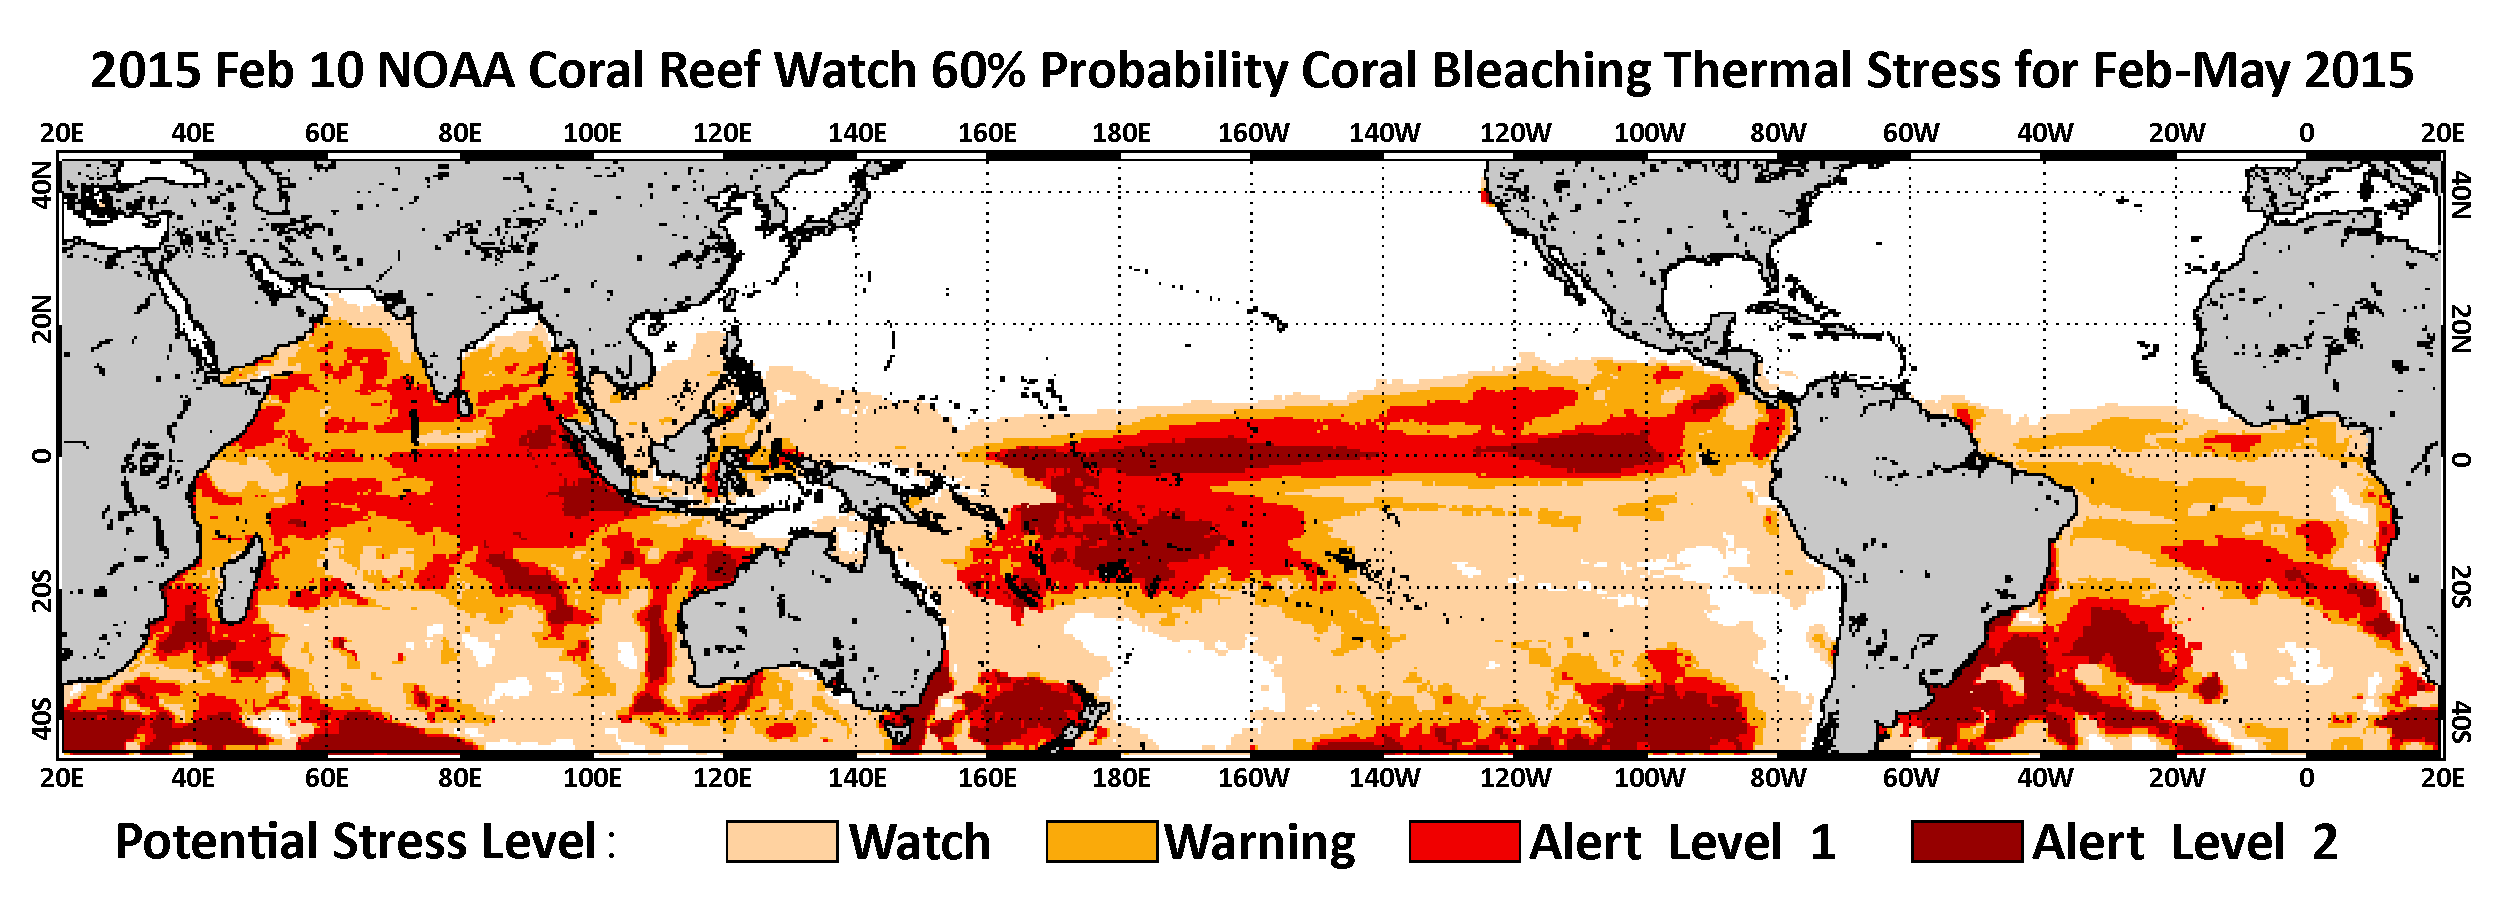 CCRW 60% Probability Coral Bleaching Terhmal Stress